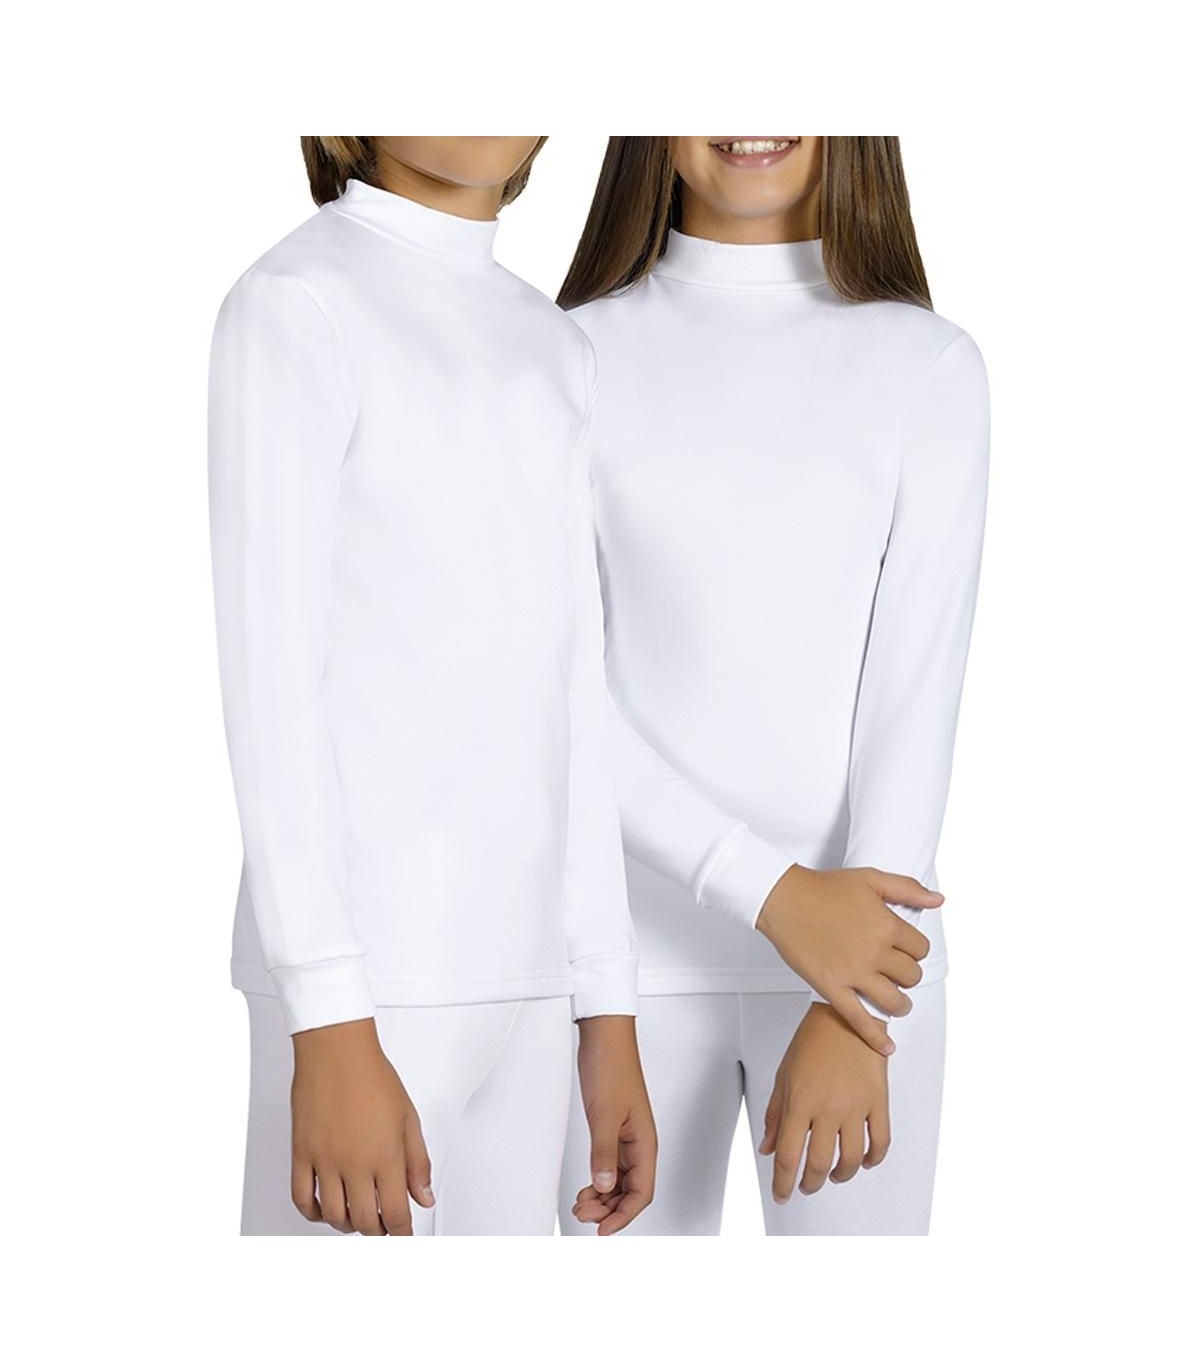 Camisetas termicas infantiles unisex Ysabel mora ref: 70300 venta online  comprar al mejor precio